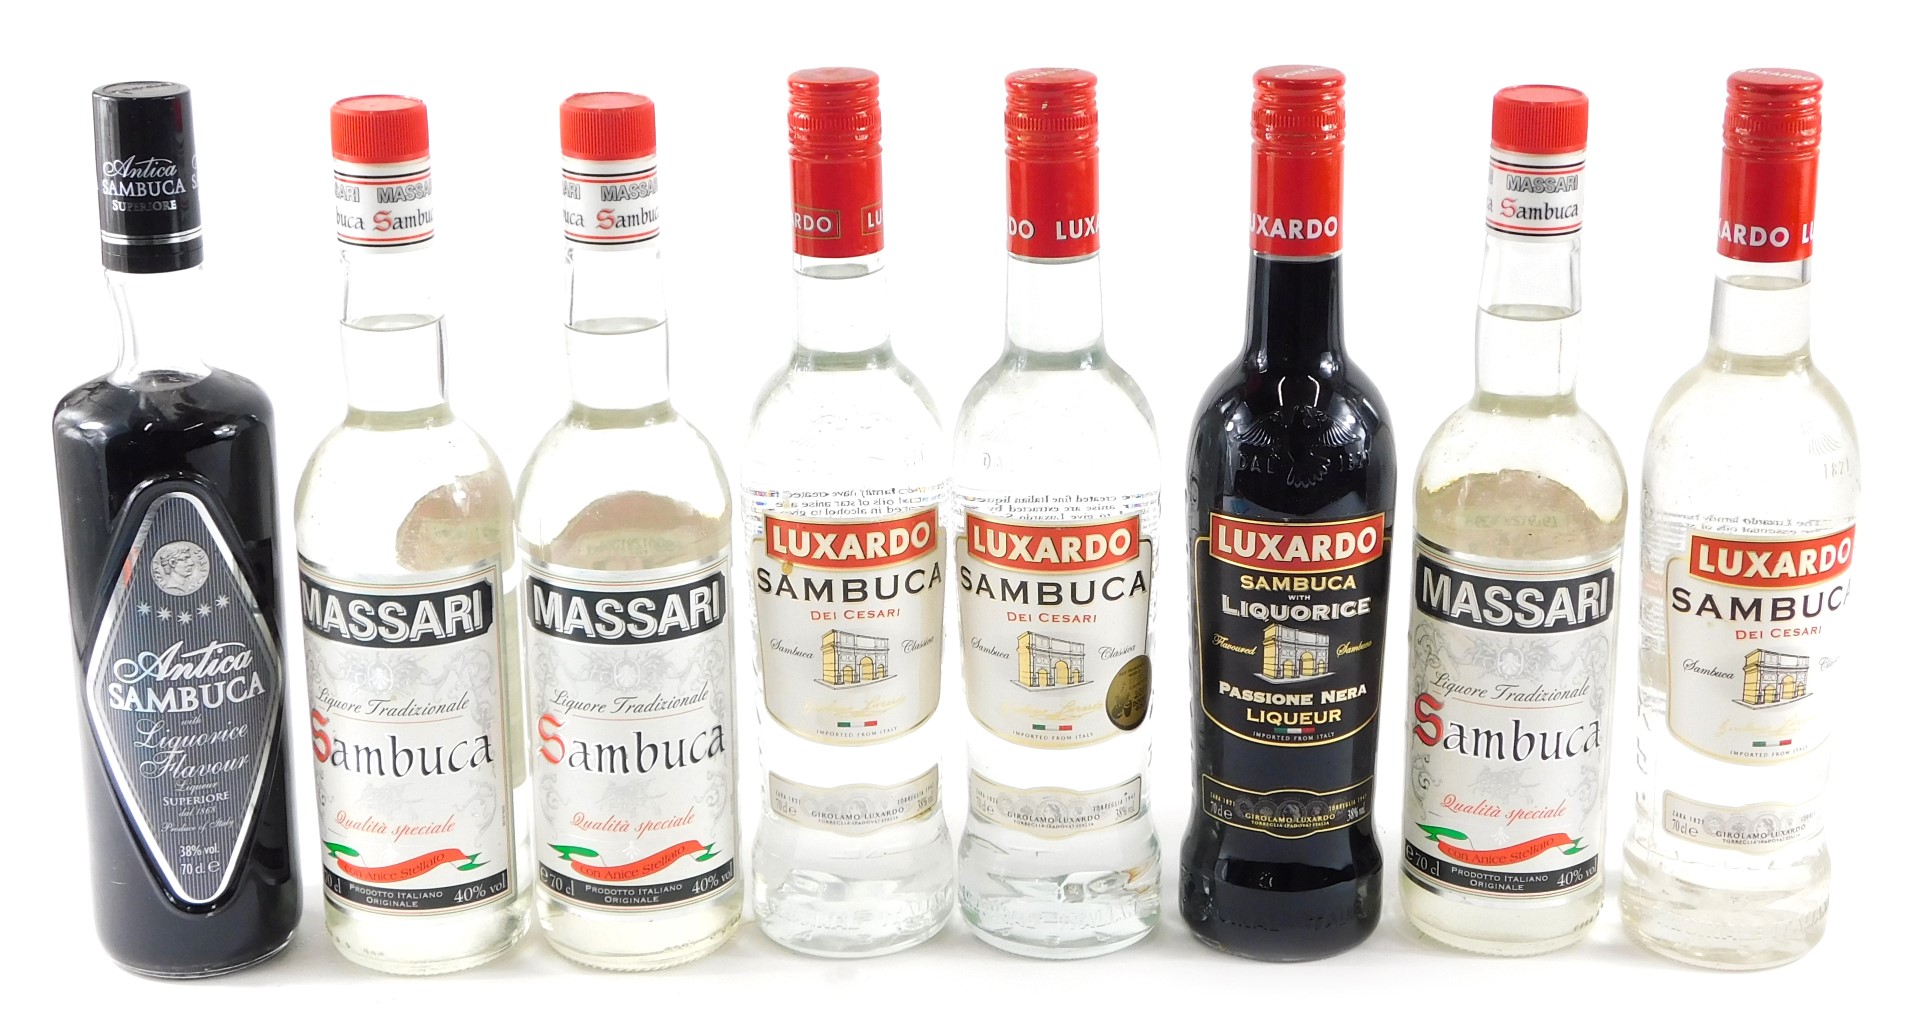 Four bottles of Luxardo Sambuca, (one liquorice), three bottles of Massari Sambuca, and Antica Sambu